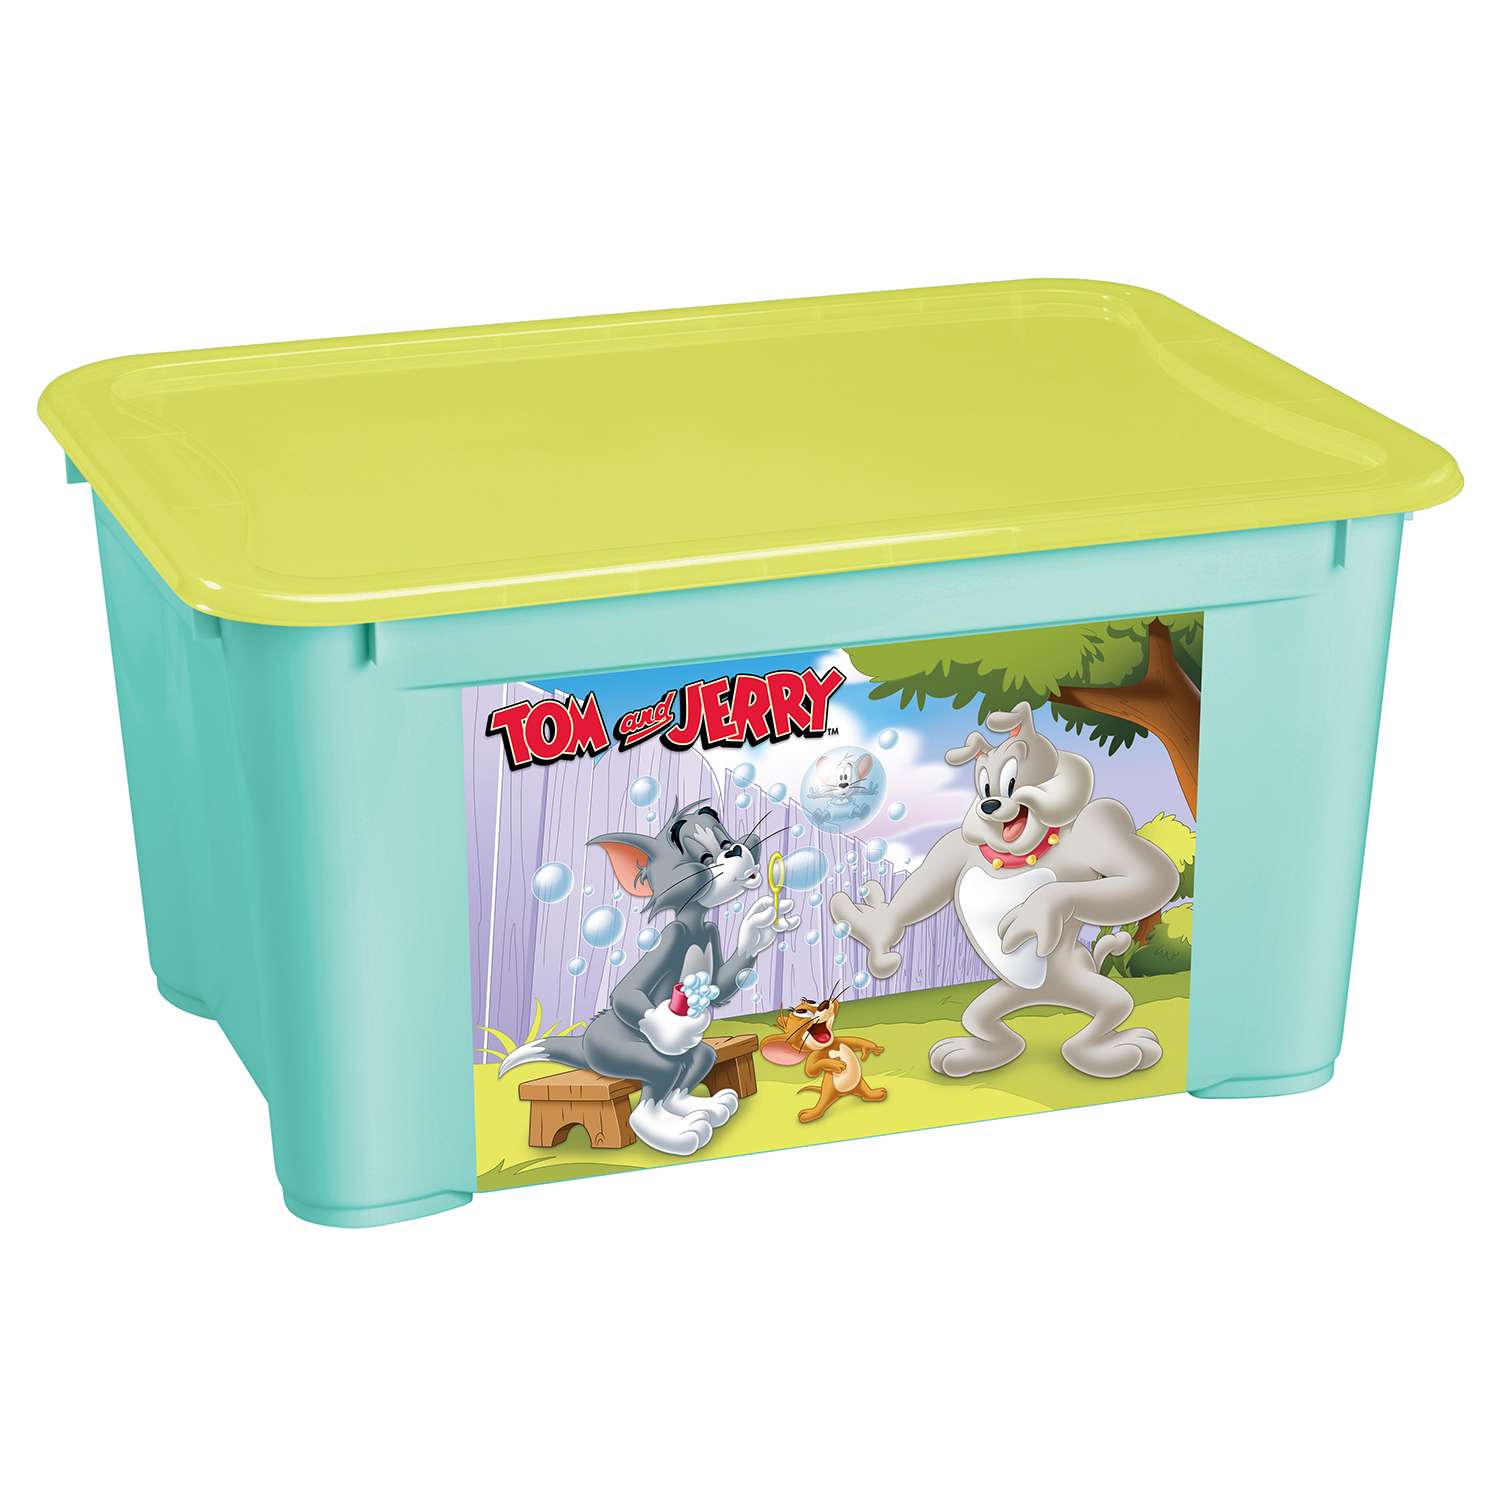 Ящик Пластишка Tom and Jerry L универсальный с аппликацией Бирюзовый - фото 1